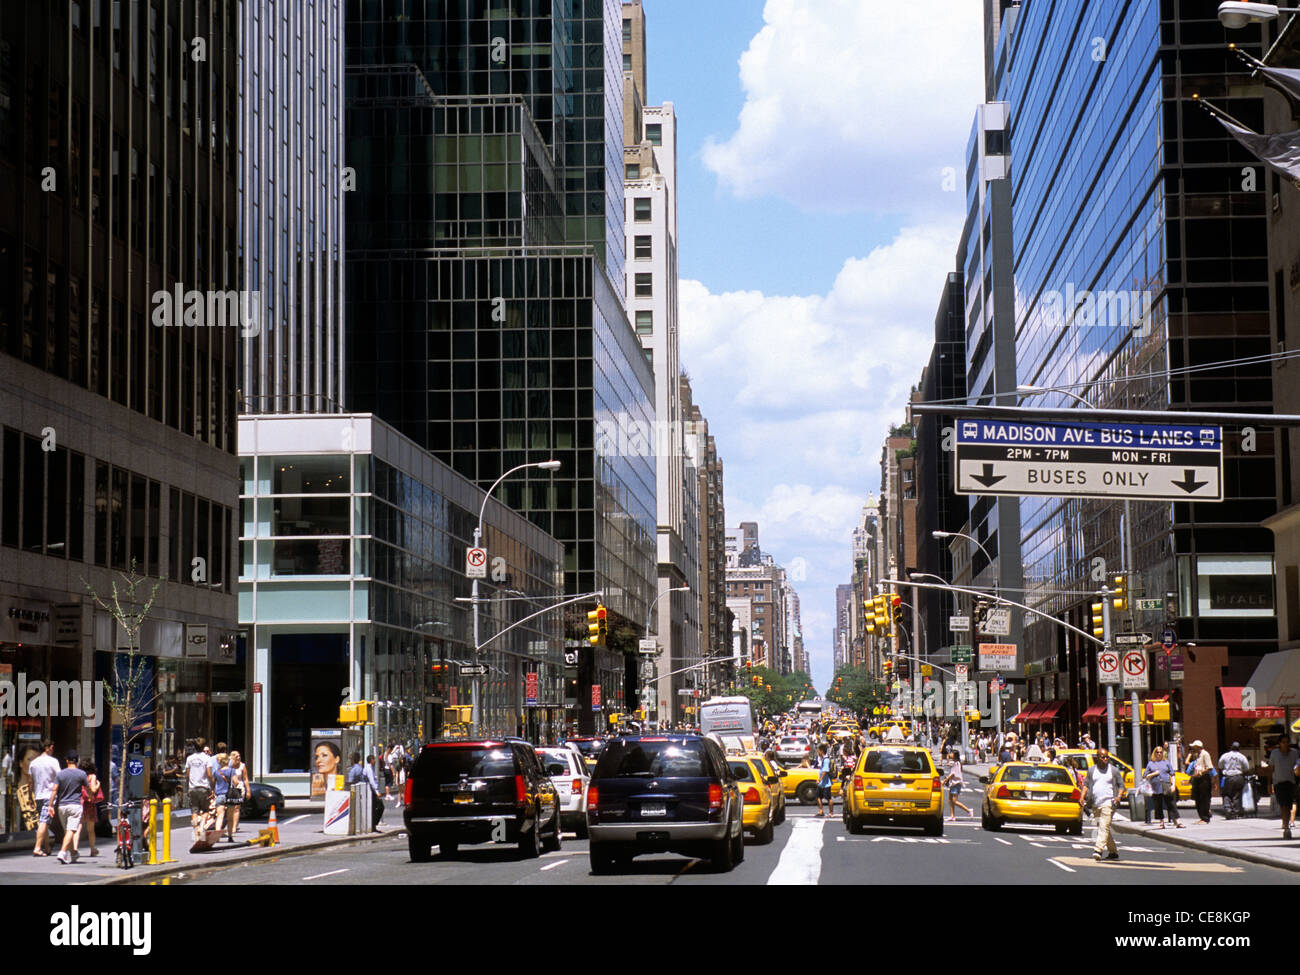 Embouteillages Midtown Manhattan. Conduite dans la ville de New York Madison Avenue circulation urbaine et shopping. ÉTATS-UNIS Banque D'Images